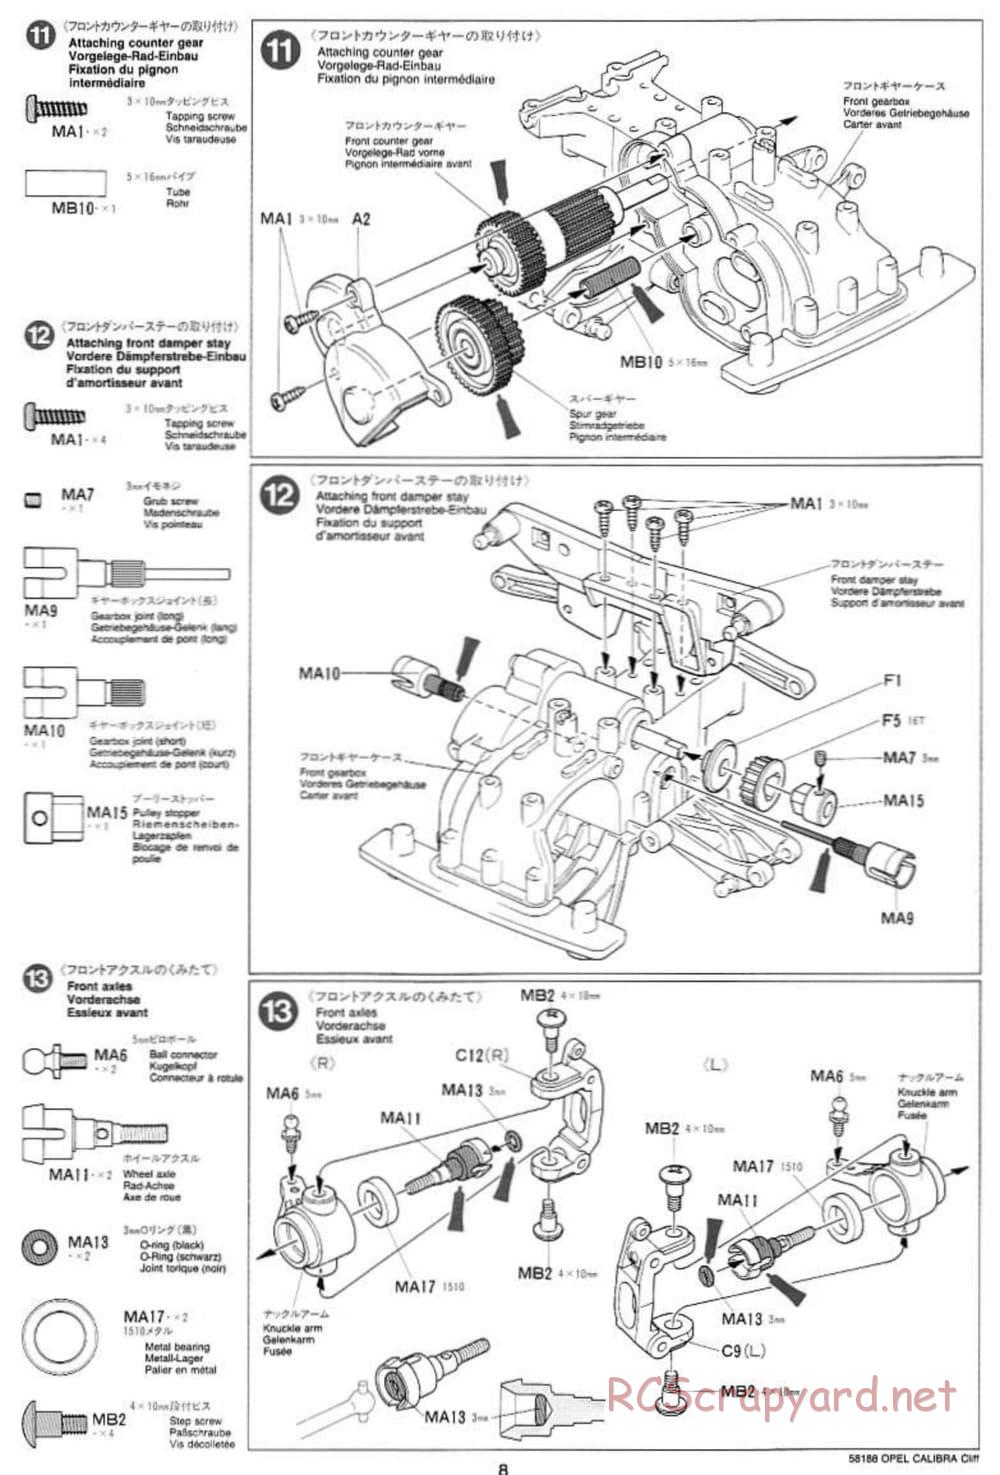 Tamiya - Opel Calibra Cliff - TA-03F Chassis - Manual - Page 8